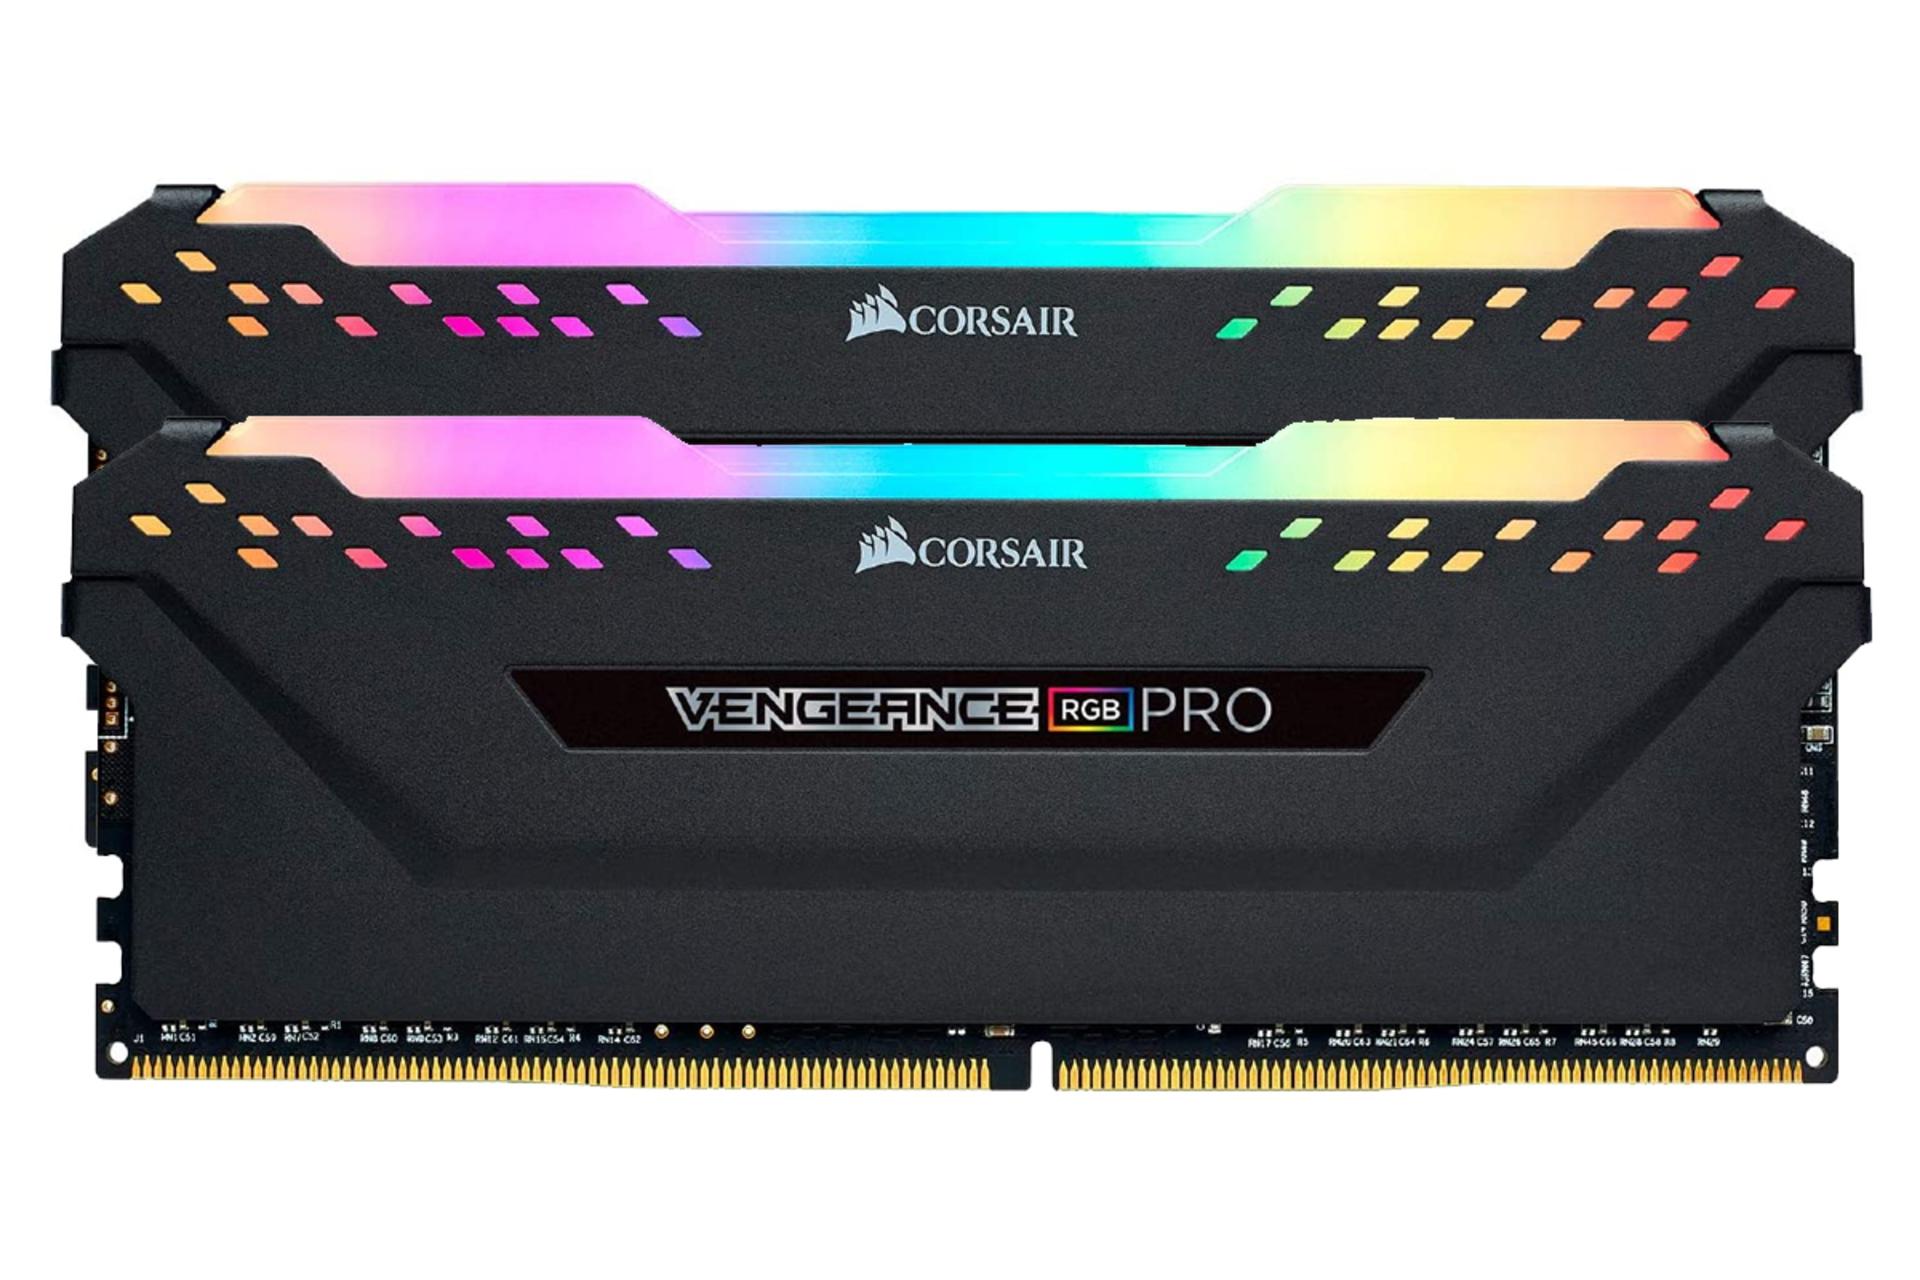 مرجع متخصصين ايران نماي جلو رم كورسير VENGEANCE RGB PRO ظرفيت 16 گيگابايت (2x8) از نوع DDR4-3600